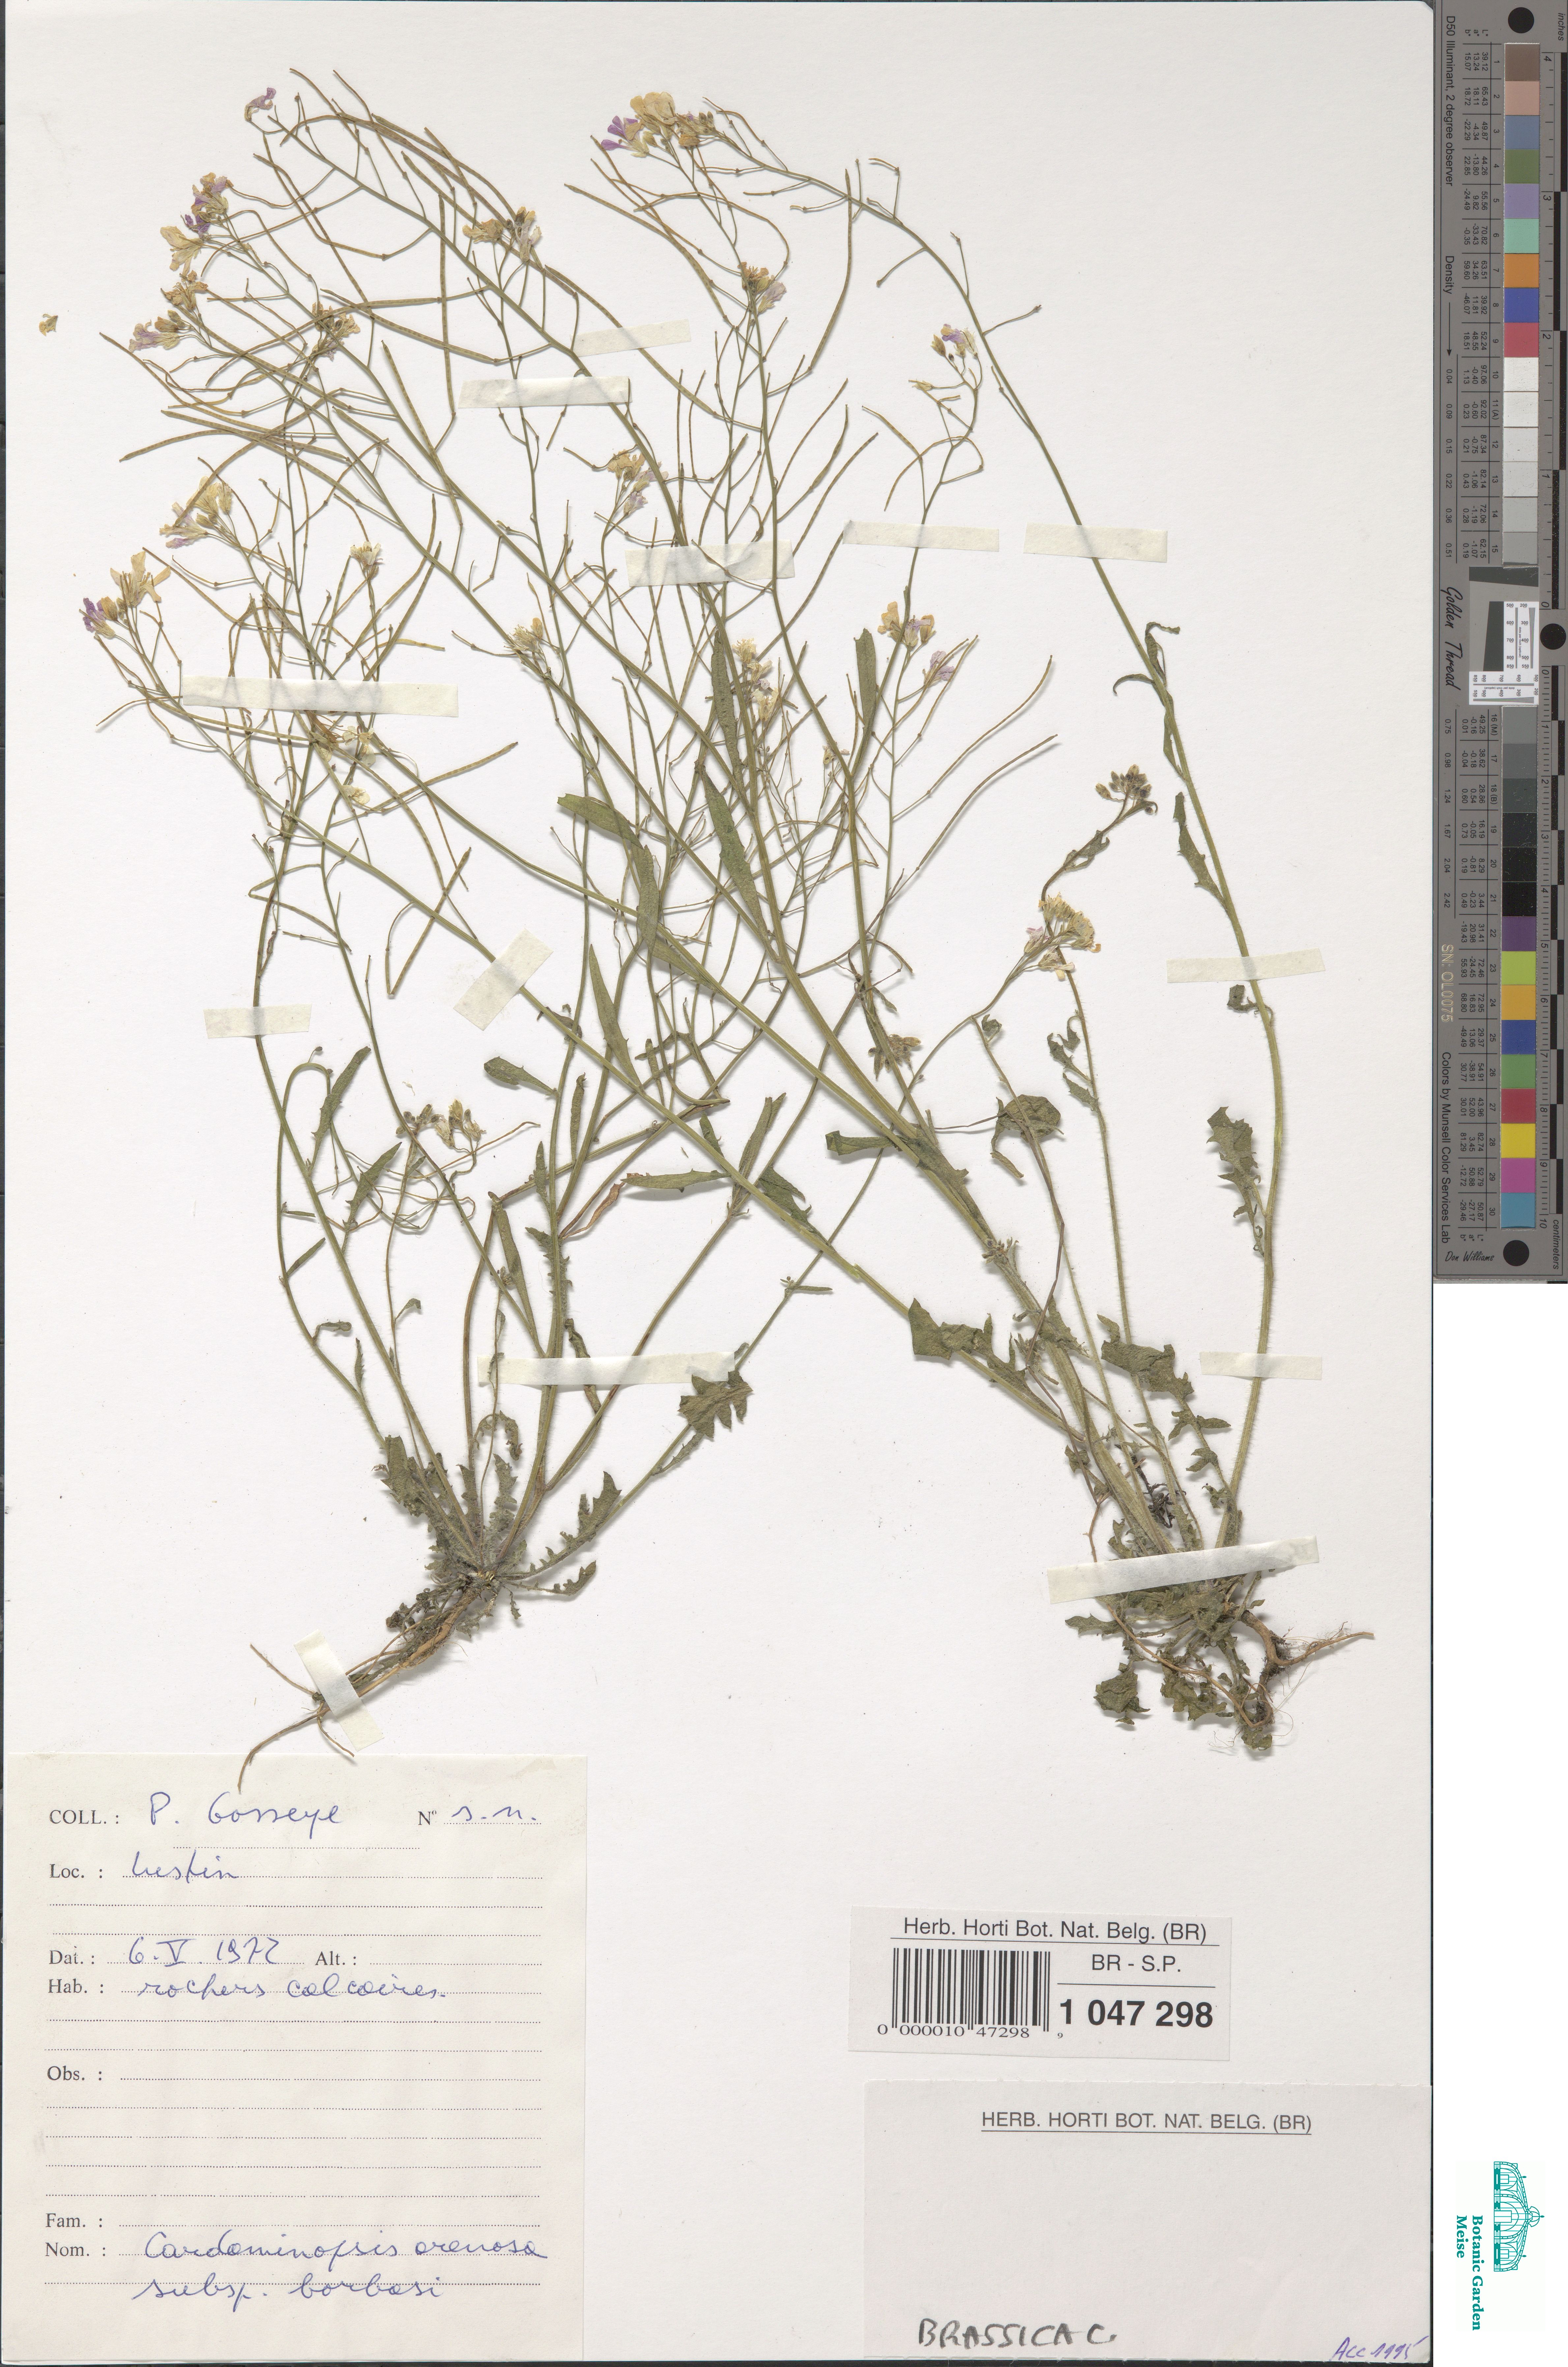 Cardaminopsis arenosa (L.) Hayek (BR0000010472989) | Zenodo